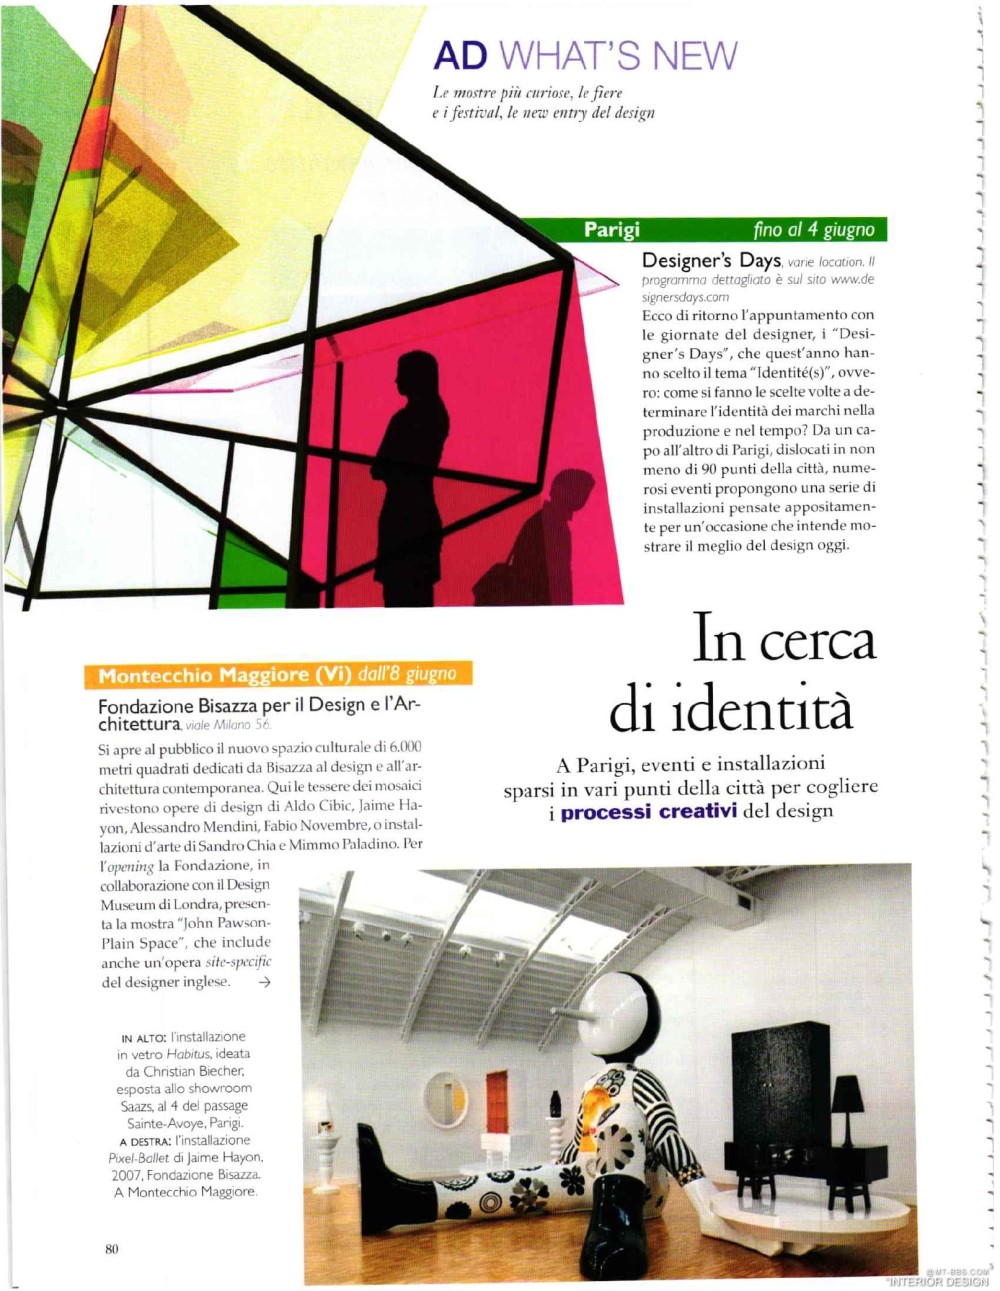 意大利AD 杂志 2012年全年JPG高清版本 全免（上传完毕）_0082.jpg